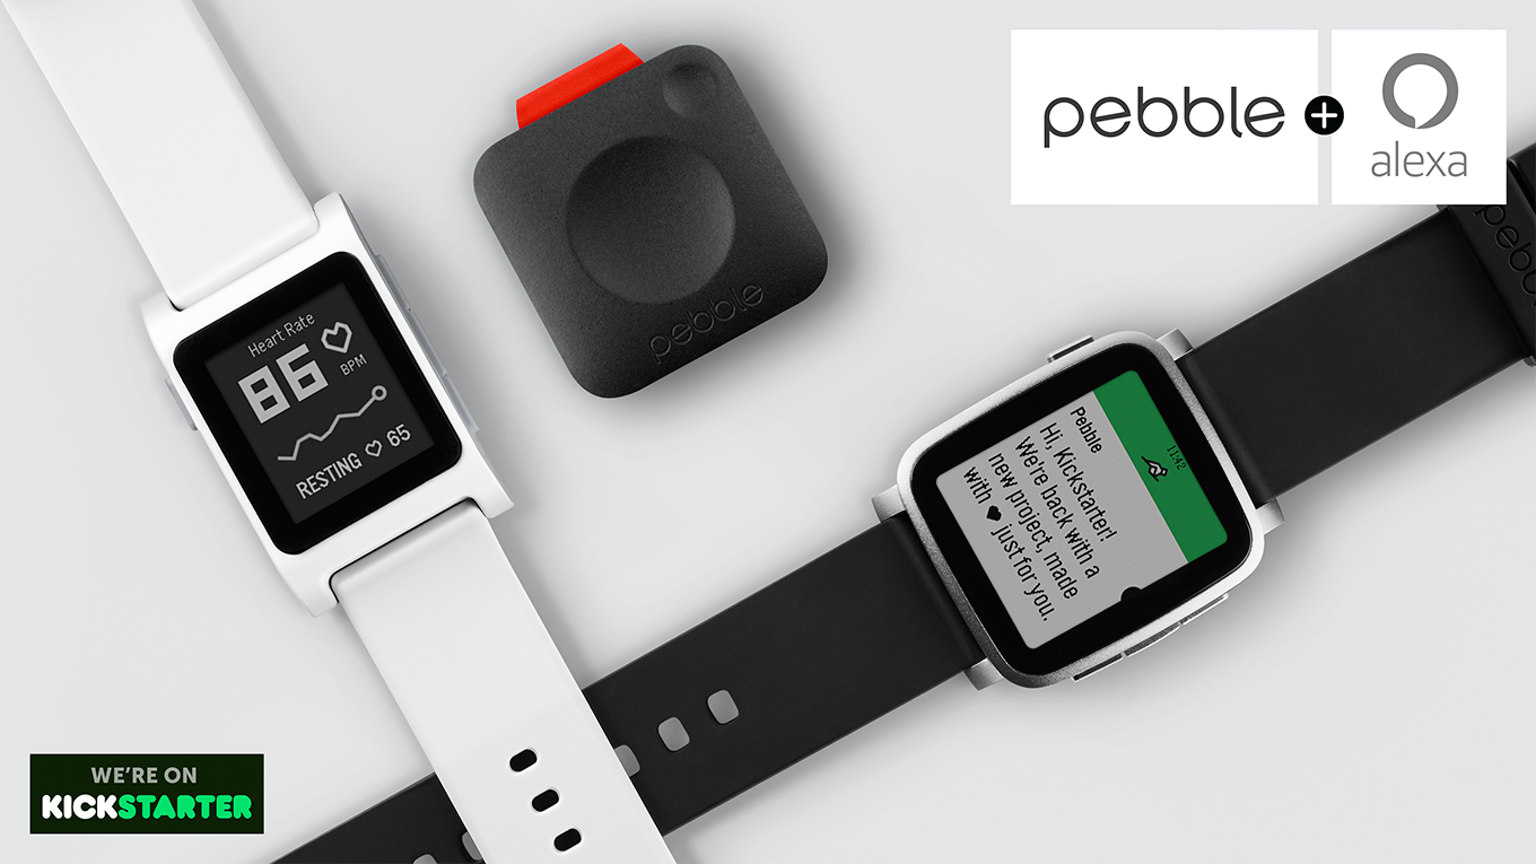 Mảng phần cứng của Pebble đóng cửa, phần mềm Fitbit mua, dừng bán và bảo hành thiết bị